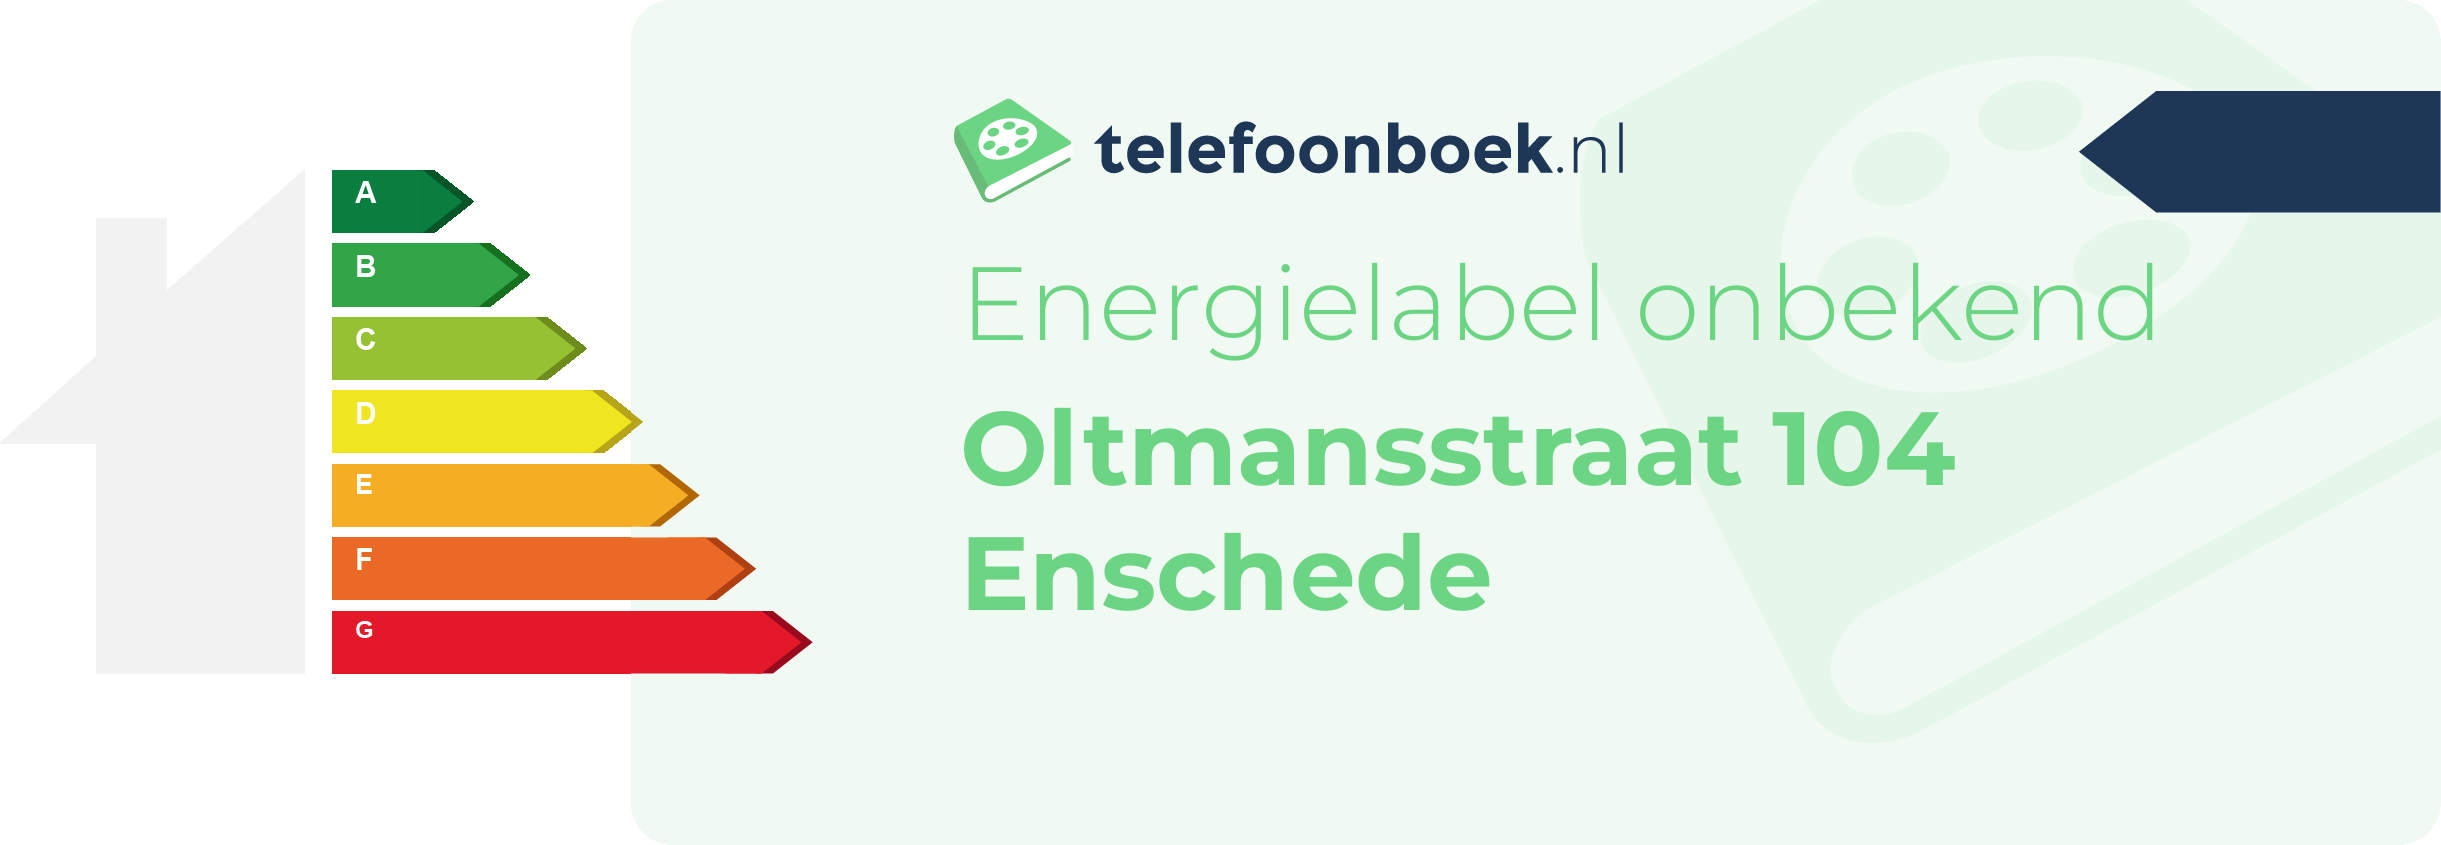 Energielabel Oltmansstraat 104 Enschede